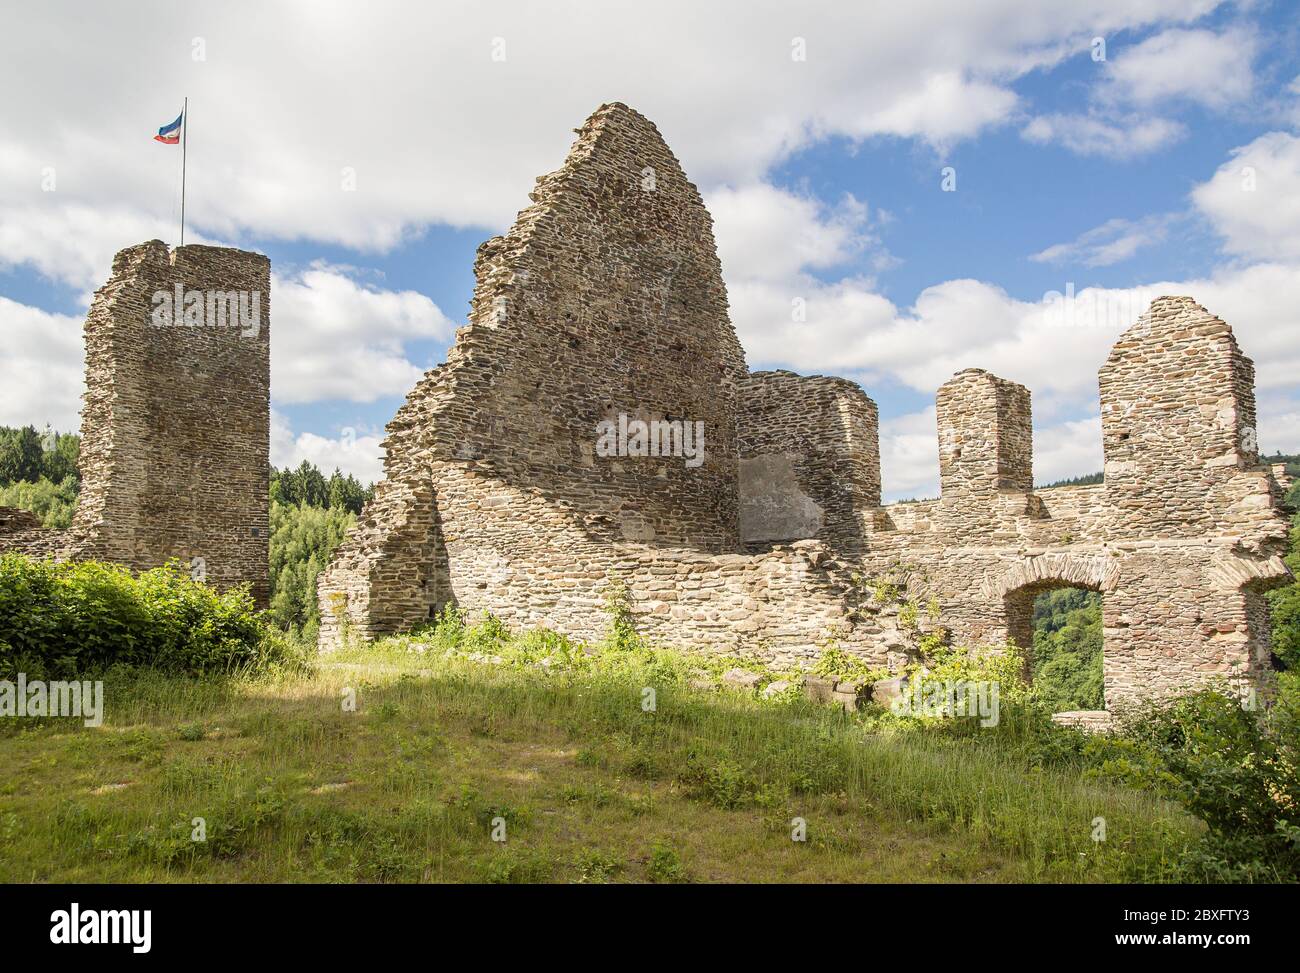 Le rovine di un castello medievale, illuminato dal sole in una giornata estiva leggermente nuvolosa. Bandiere in alto. Foto Stock